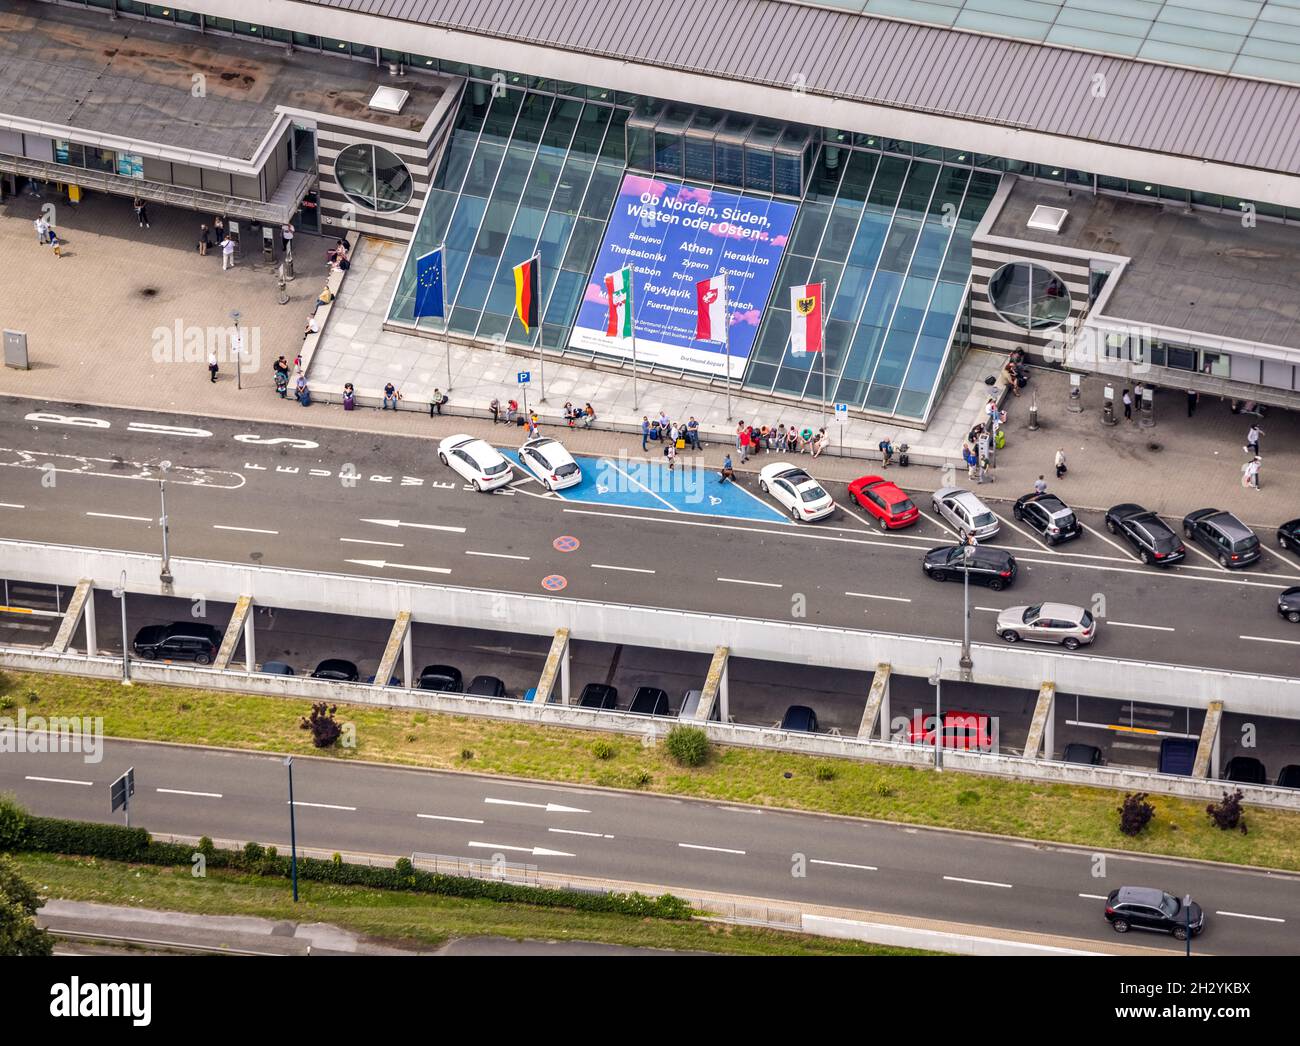 Vista aérea, aeropuerto de Dortmund, nivel de salida, llegada a la derecha del camino, banderas en la entrada del aeropuerto, EDLW, Wickede, Dortmund, área del Ruhr, Rin del Norte-Westp Foto de stock